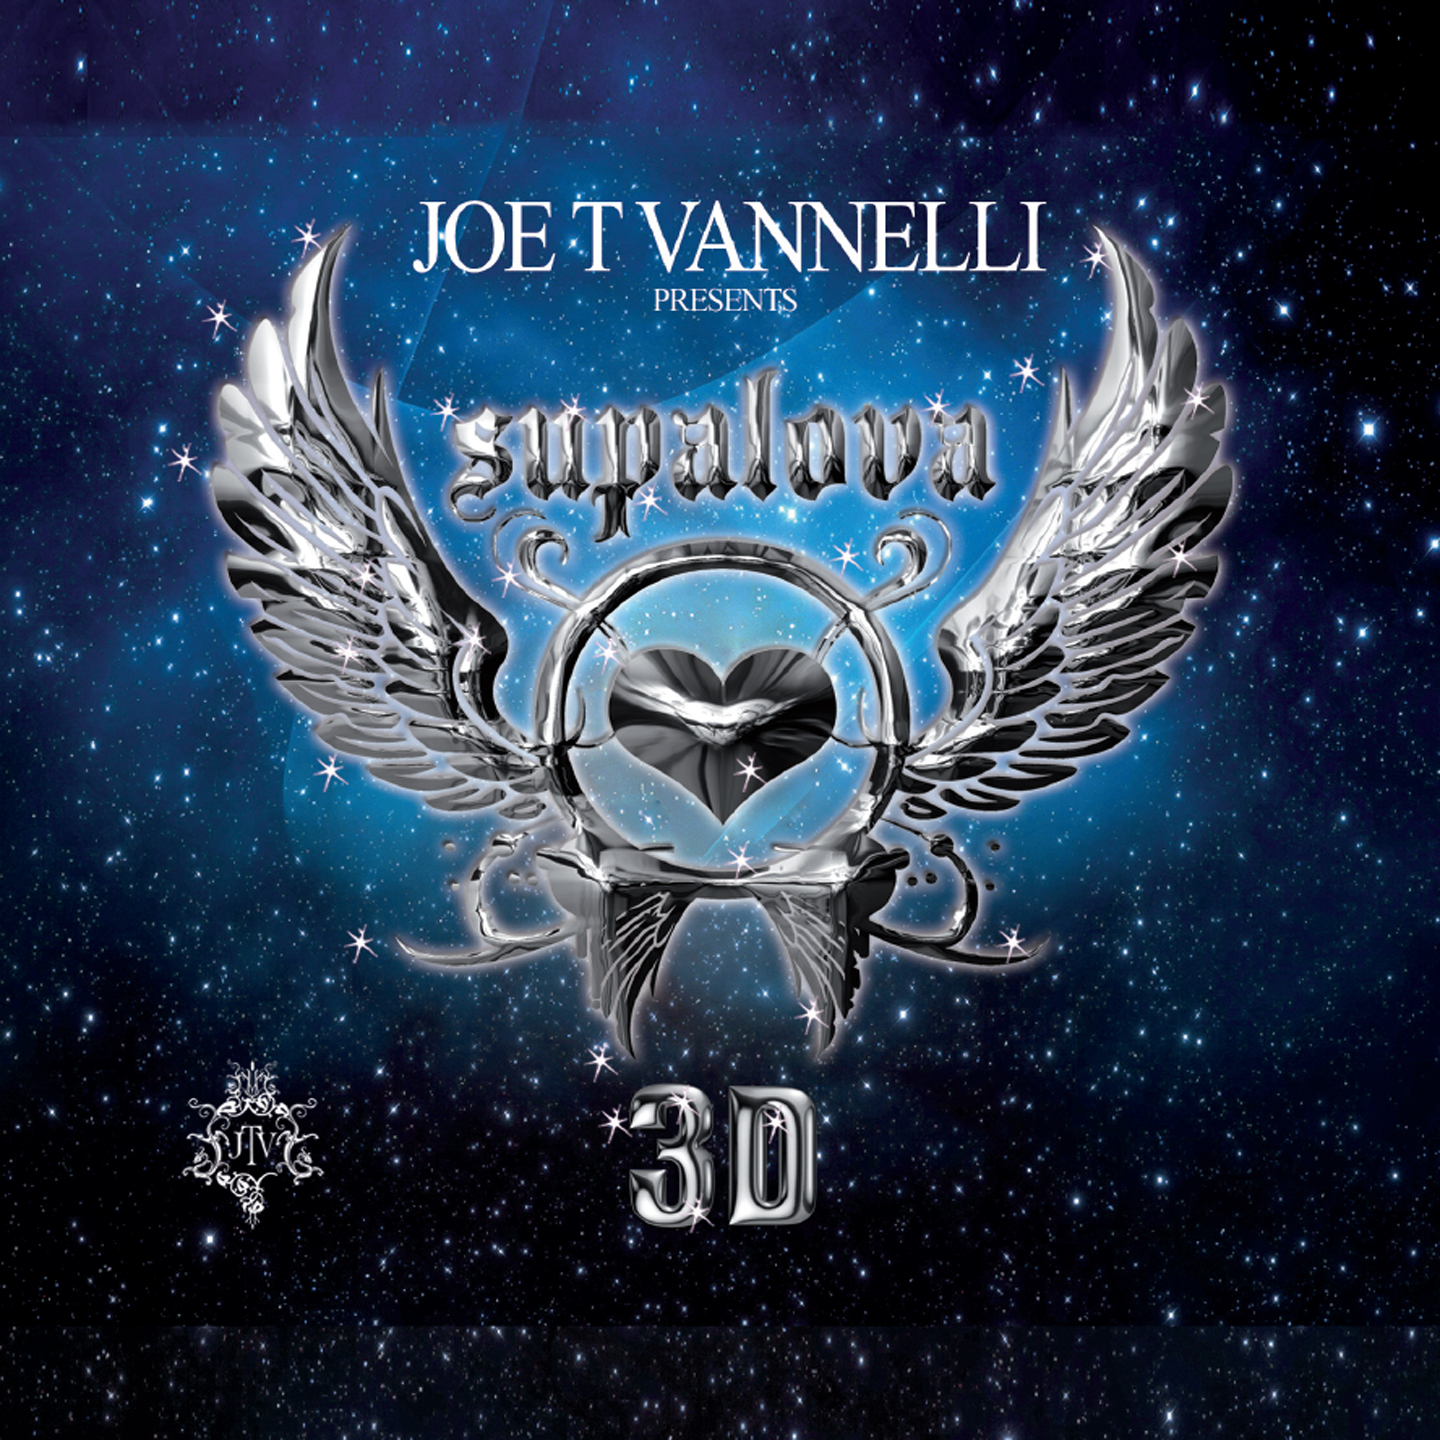 Joe T Vannelli presents Supalova 3D